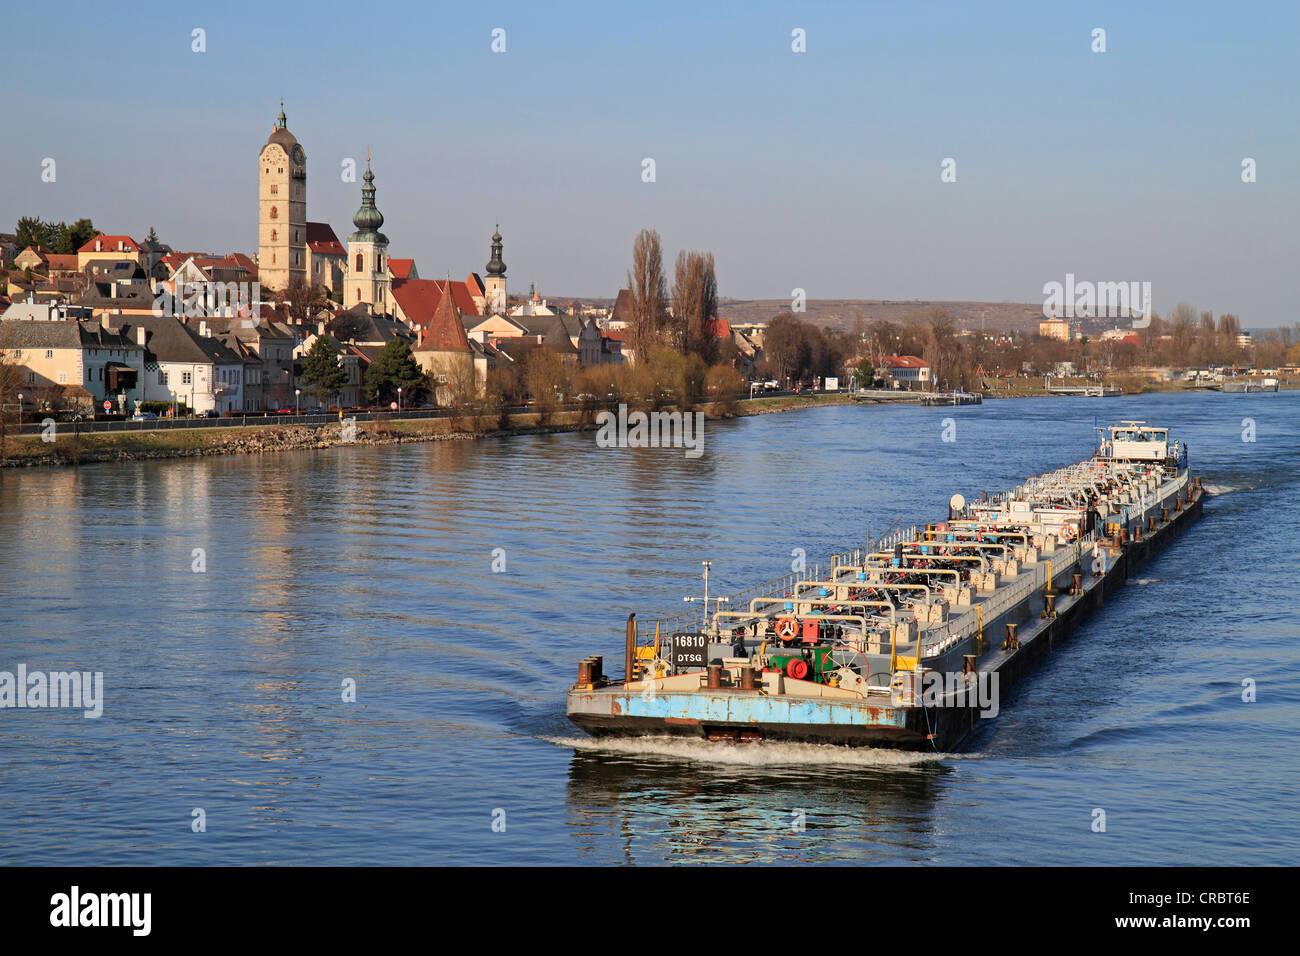 Ship on the Danube River, Stein an der Donau, Krems an der Donau, Lower Austria, Austria, Europe Stock Photo